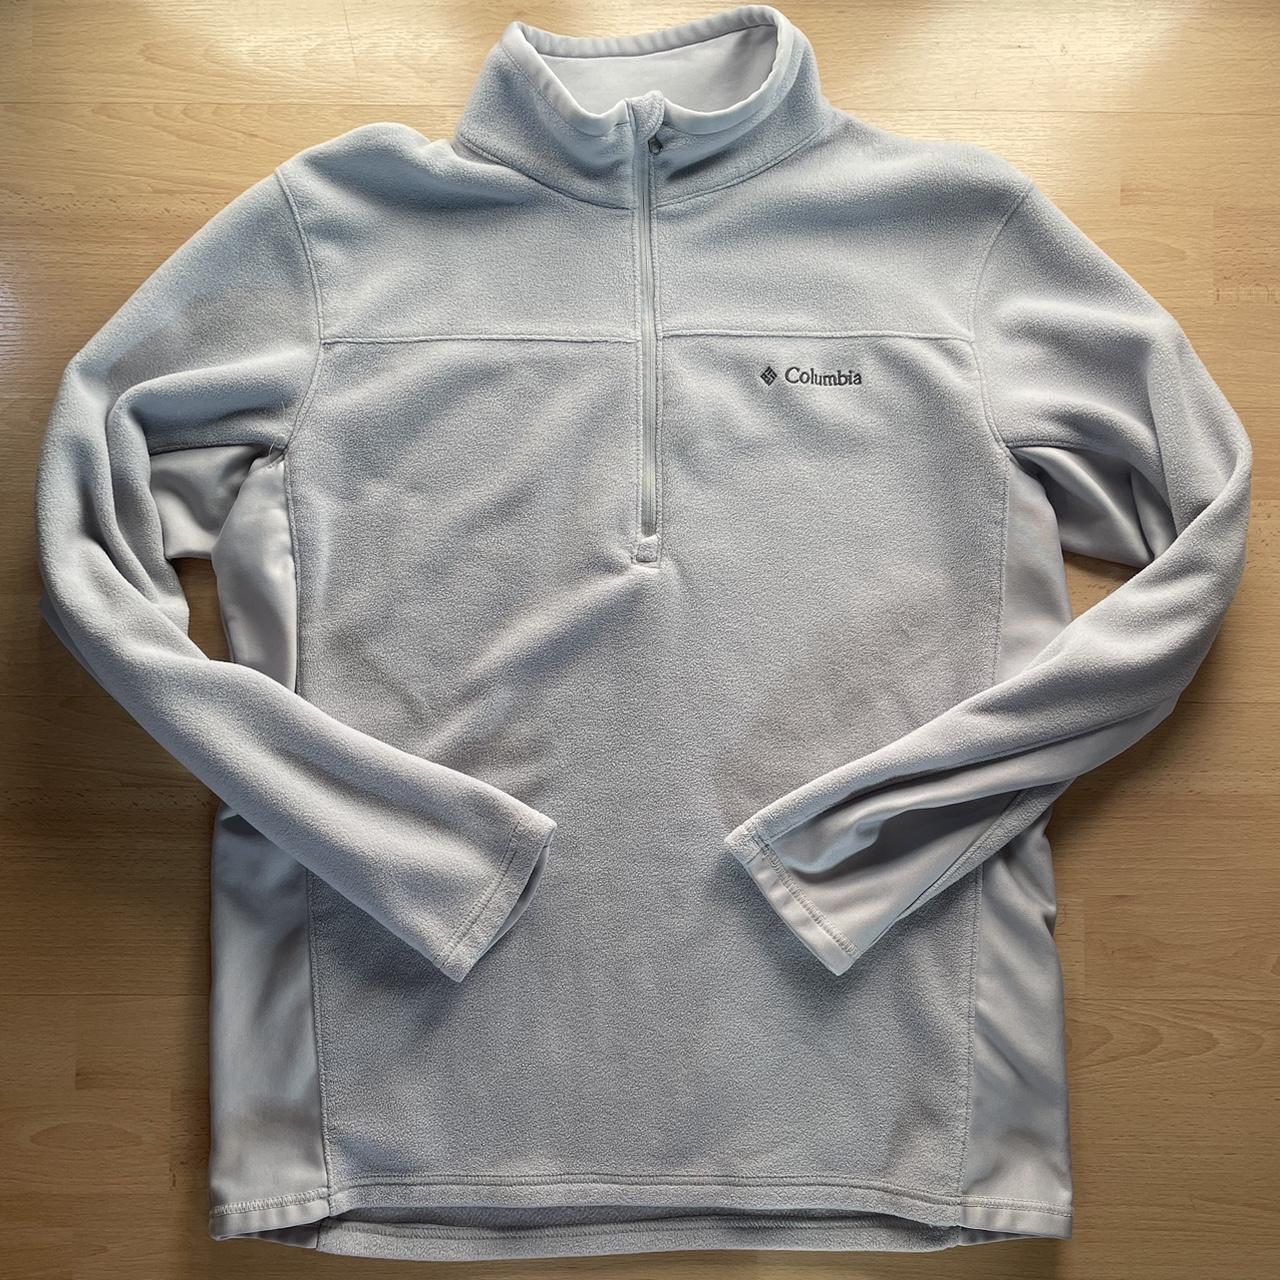 Grey/gray Columbia quarter zip sweater Size... - Depop